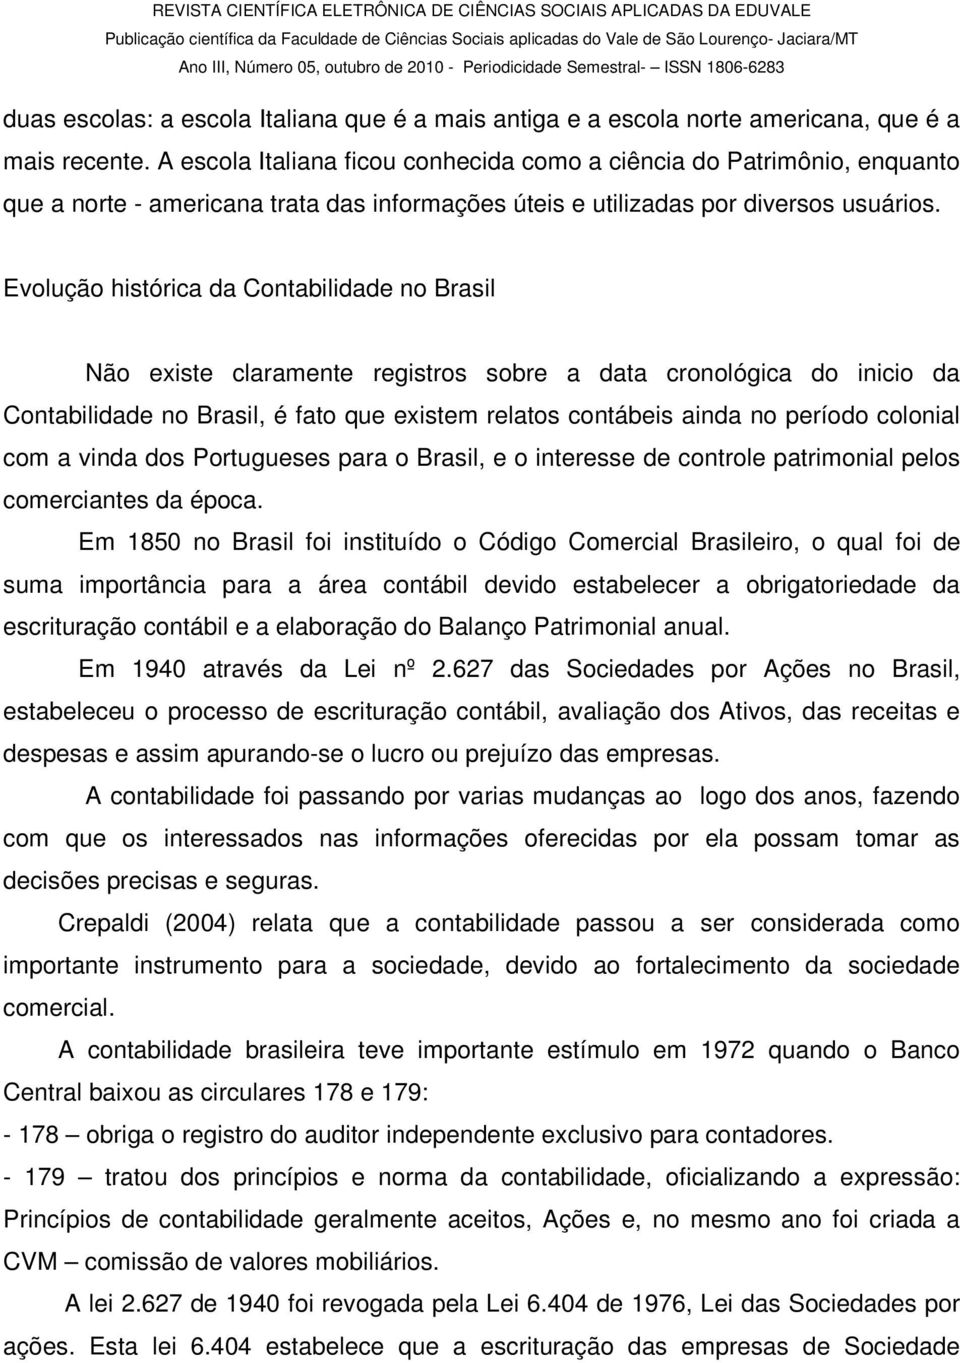 Evolução histórica da Contabilidade no Brasil Não existe claramente registros sobre a data cronológica do inicio da Contabilidade no Brasil, é fato que existem relatos contábeis ainda no período